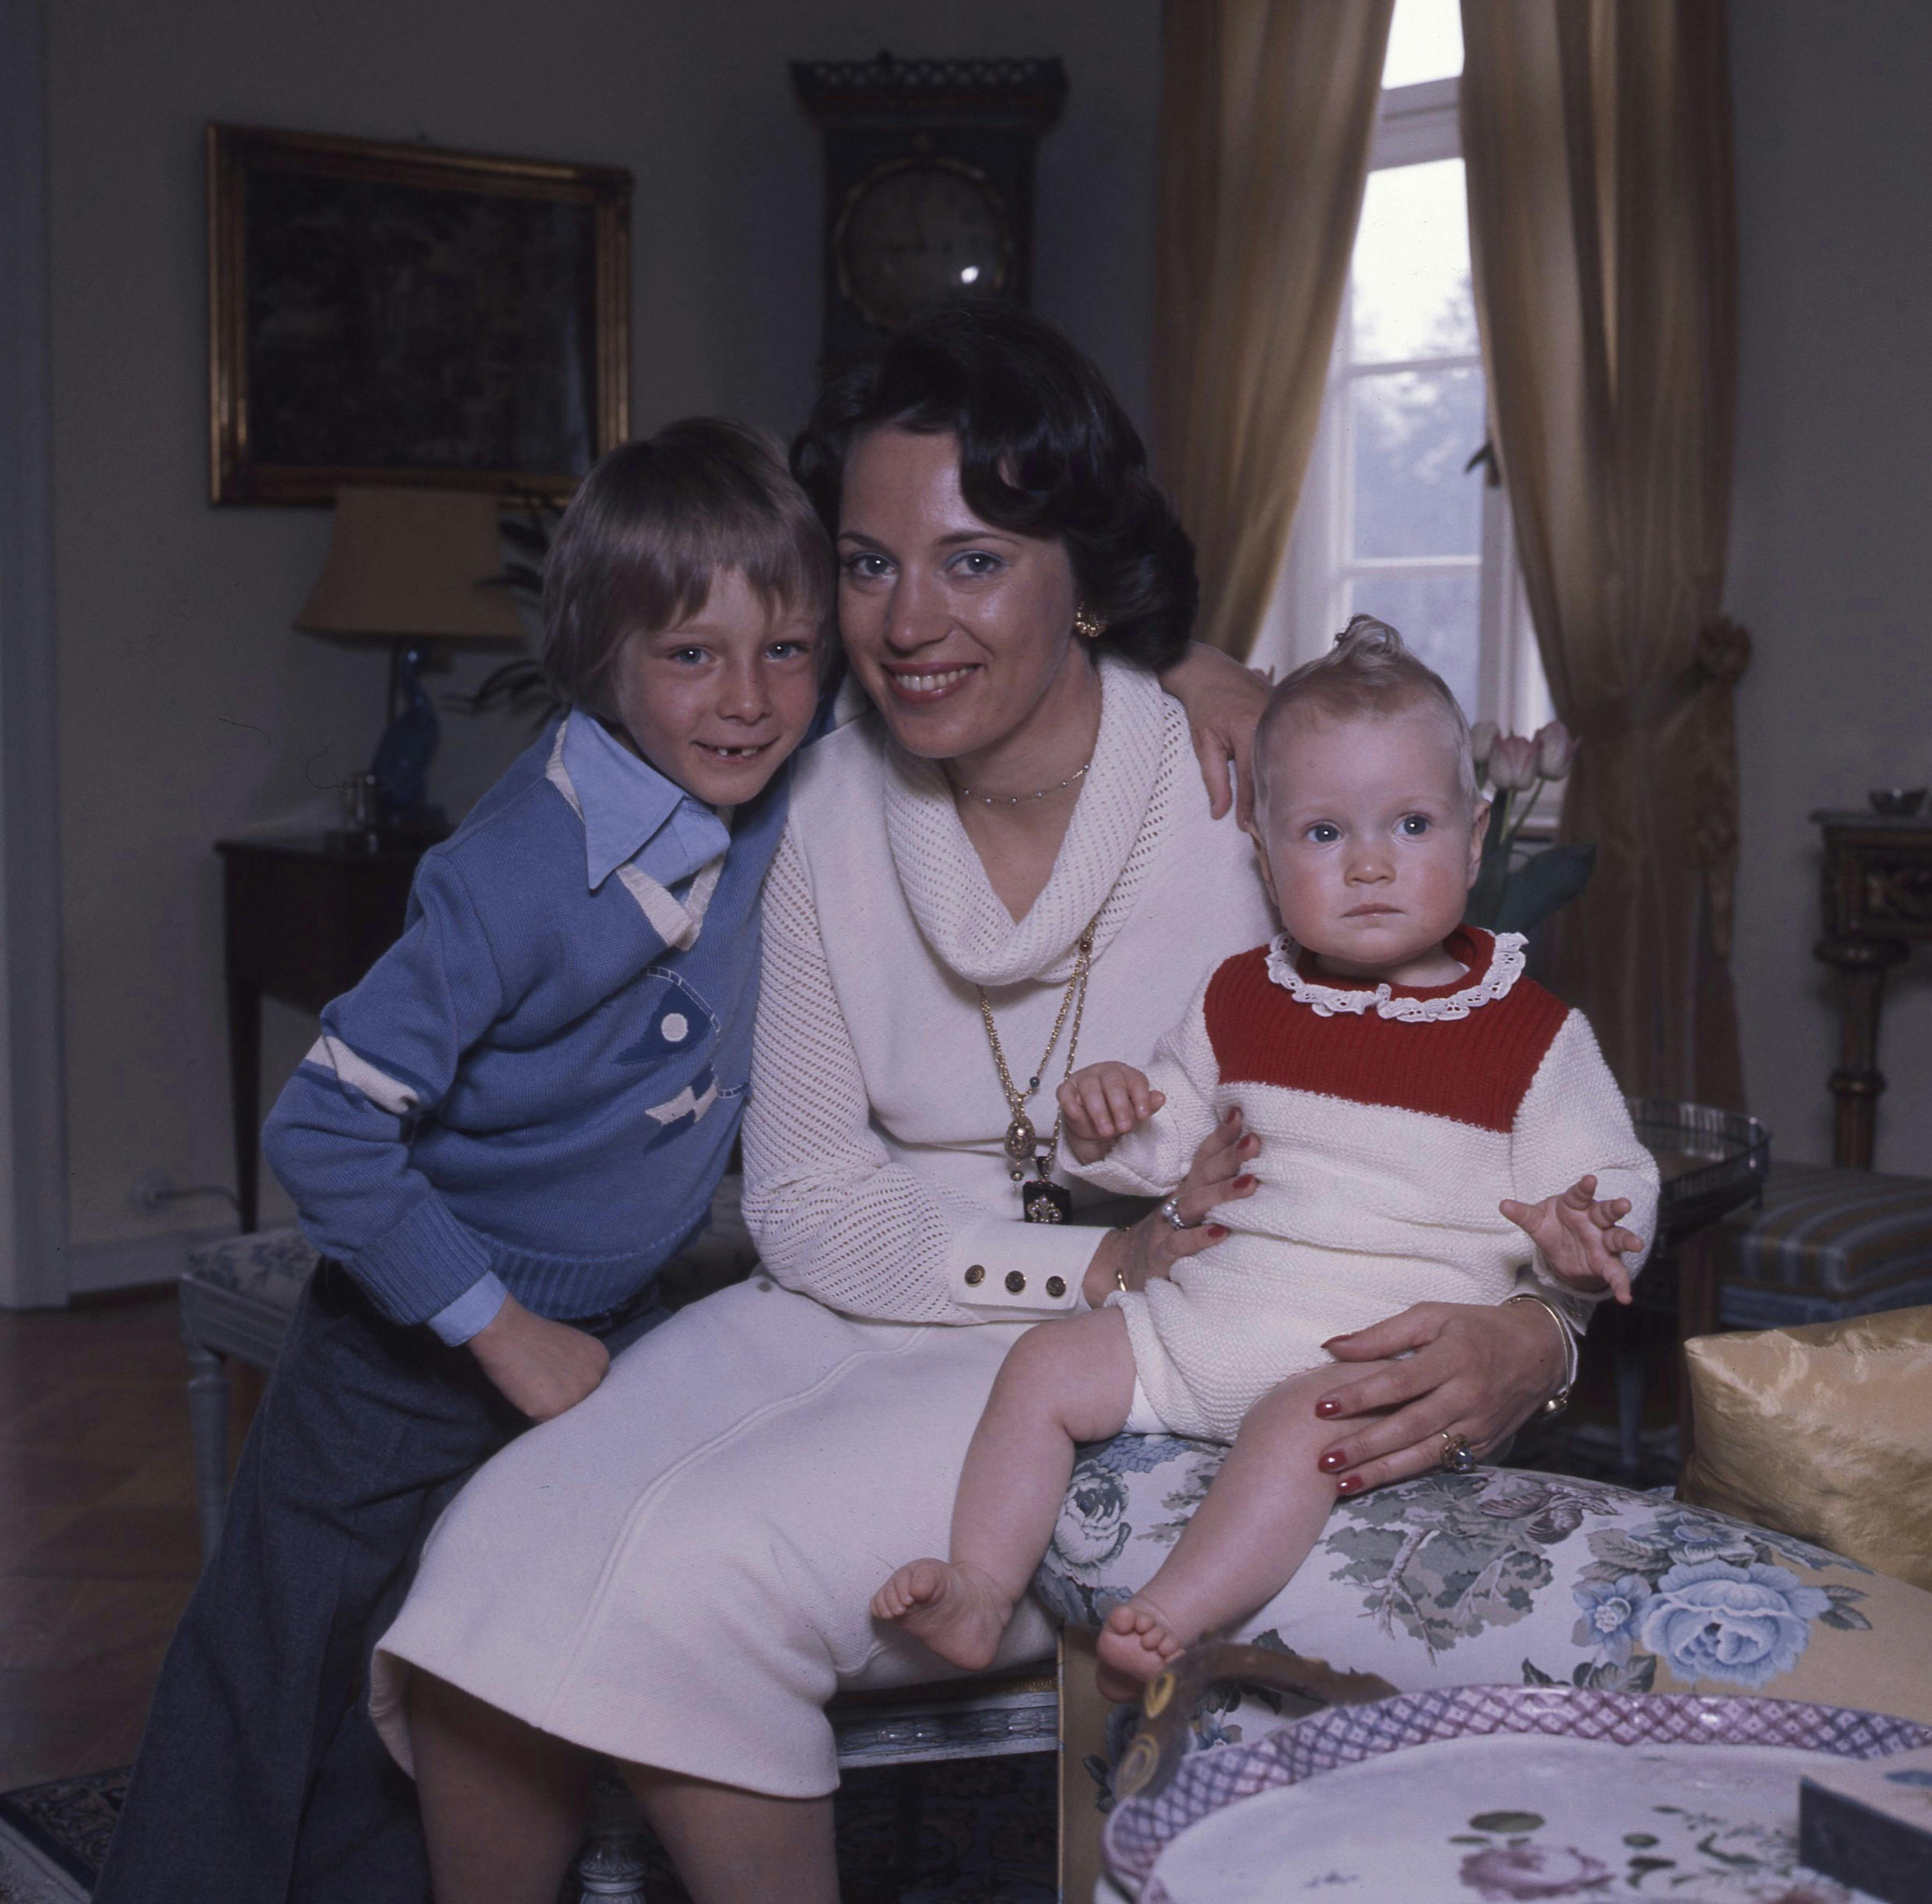  Prinsesse Benedikte med prins Gustav og prinsesse Nathalie i 1970'erne. 